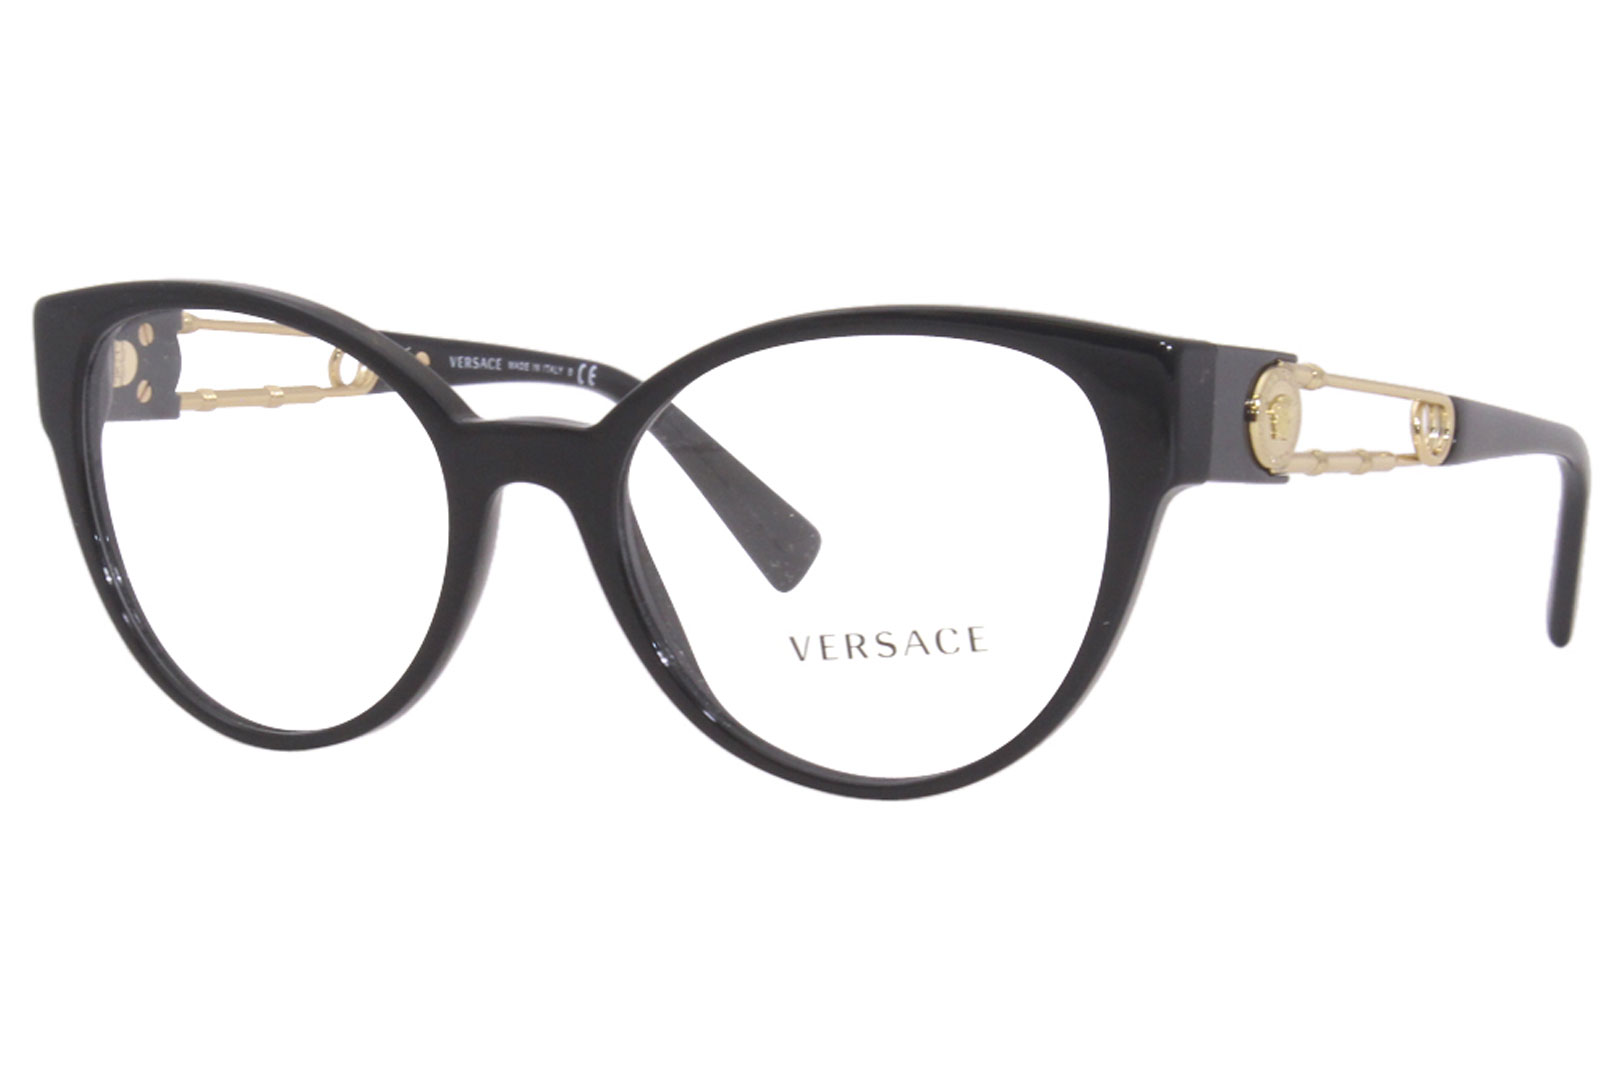 Versace Eyeglasses Frame Women's 3307 GB1 Black/Gold Medusa Logo 54-19 ...